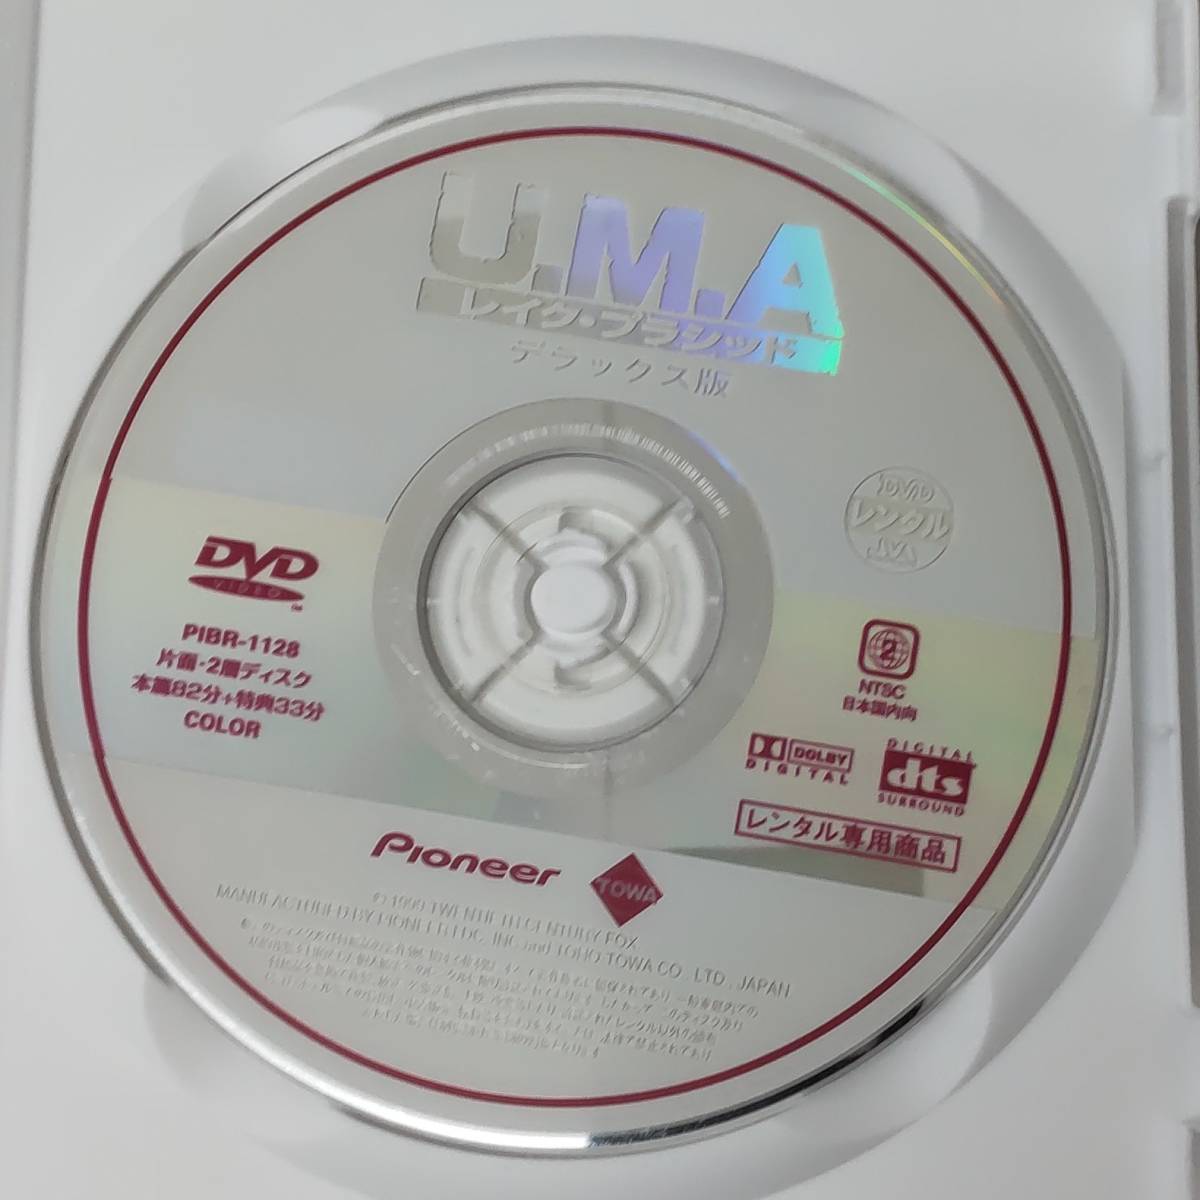 11-7　U・M・A レイク・プラシッド（洋画）PIBR-1128 レンタルアップ 中古 DVD_画像4